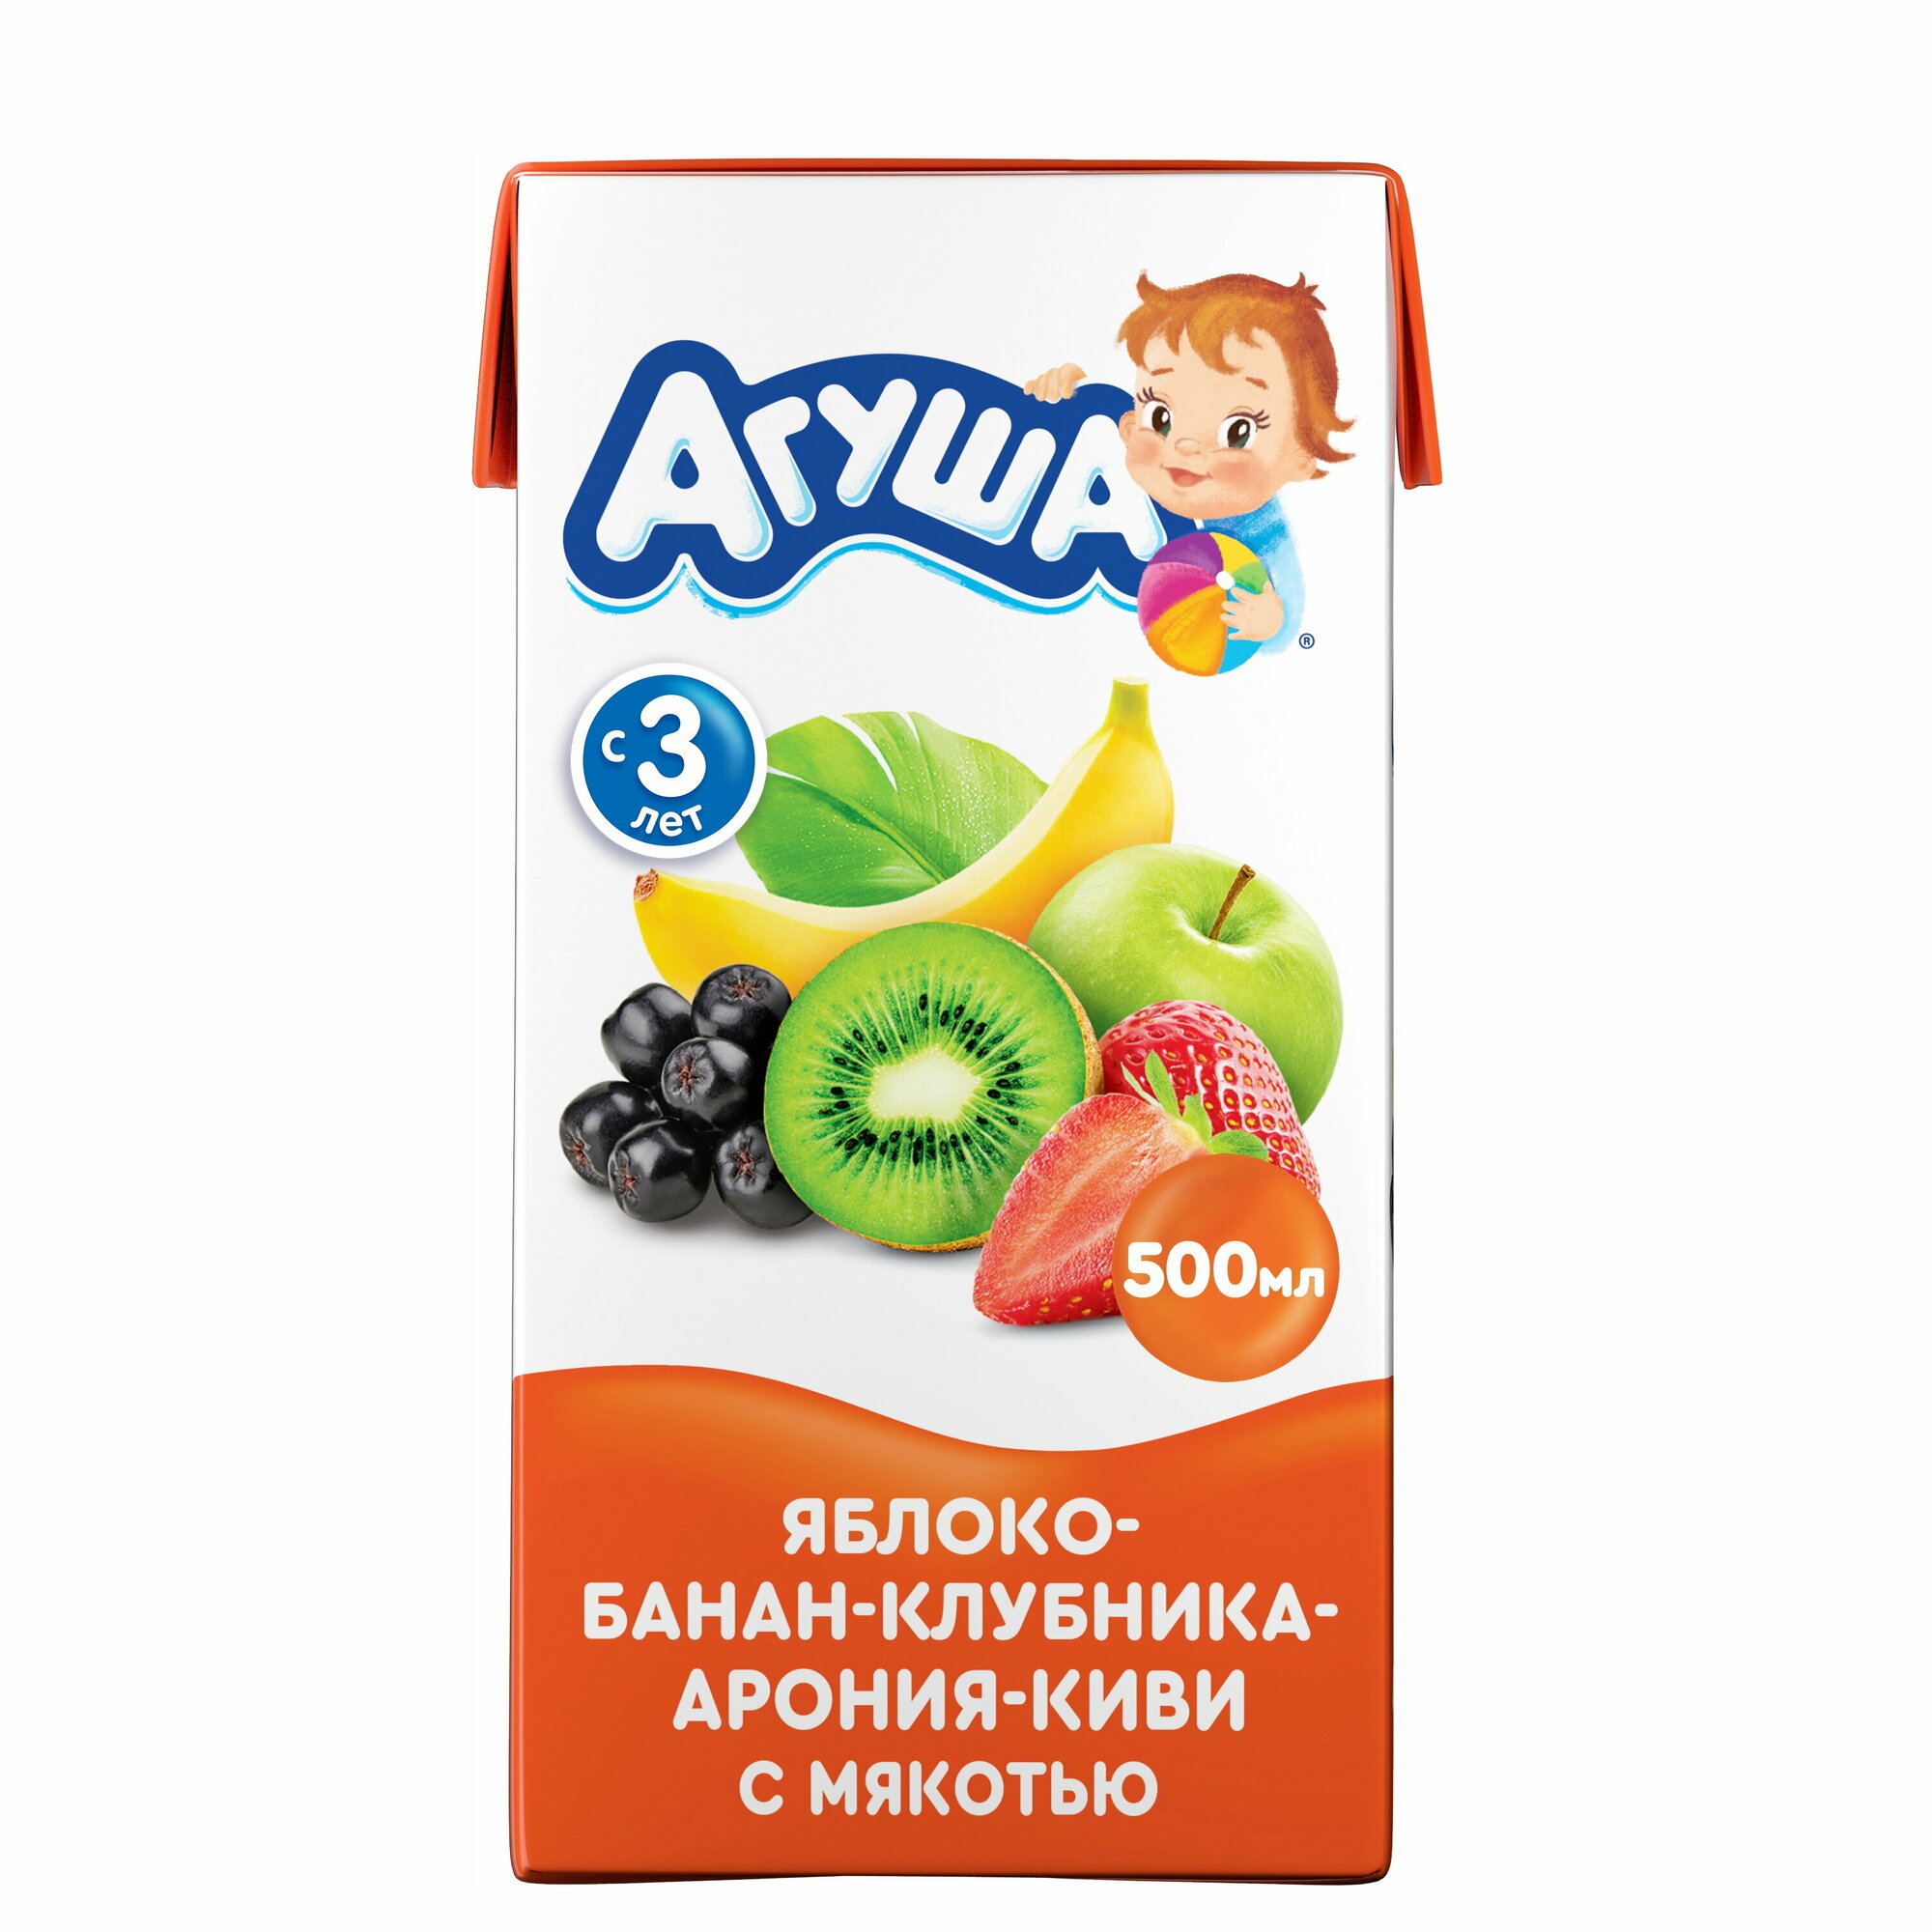 Сок Агуша яблоко-банан-клубника-арония-киви с мякотью с 3 лет